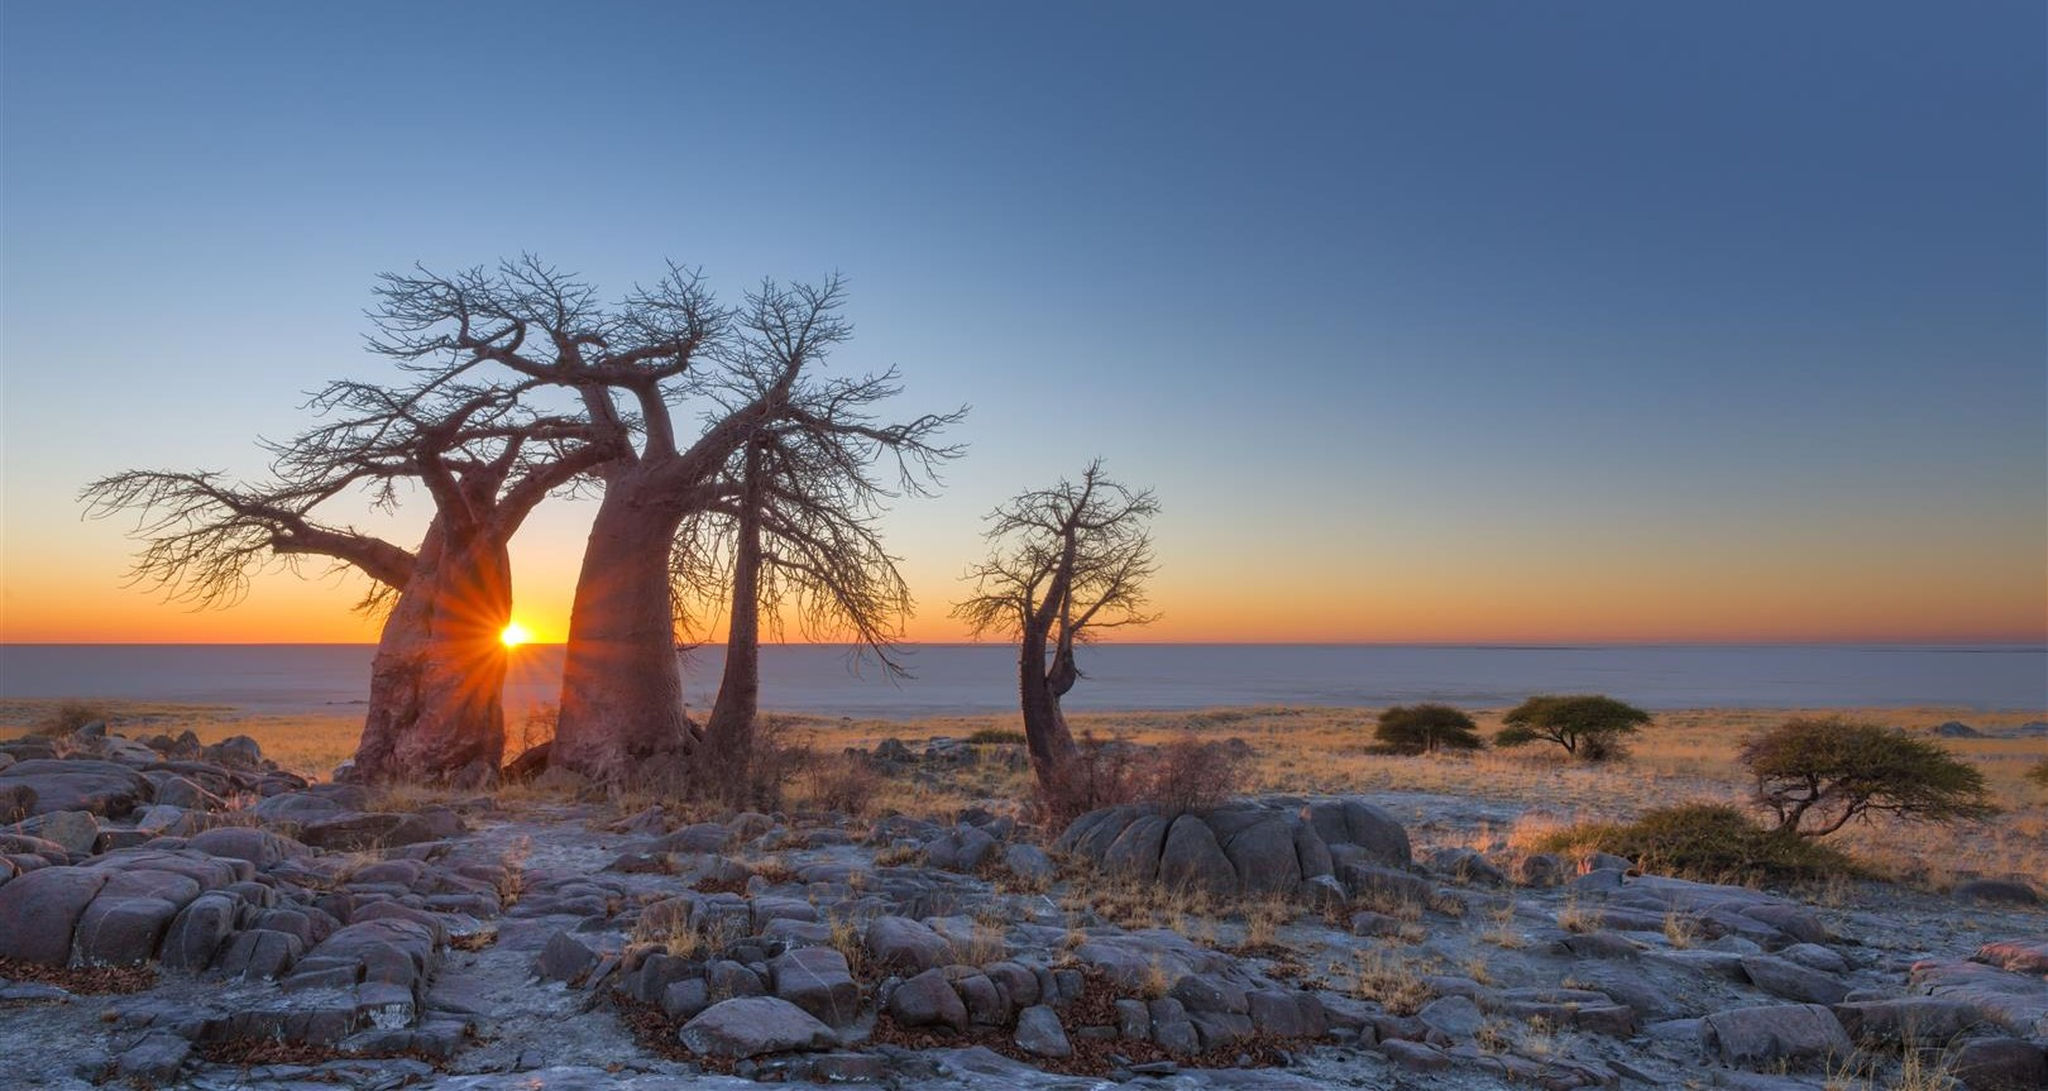 Árbol baobab al atardecer en el desierto de Kalahari, Botswana